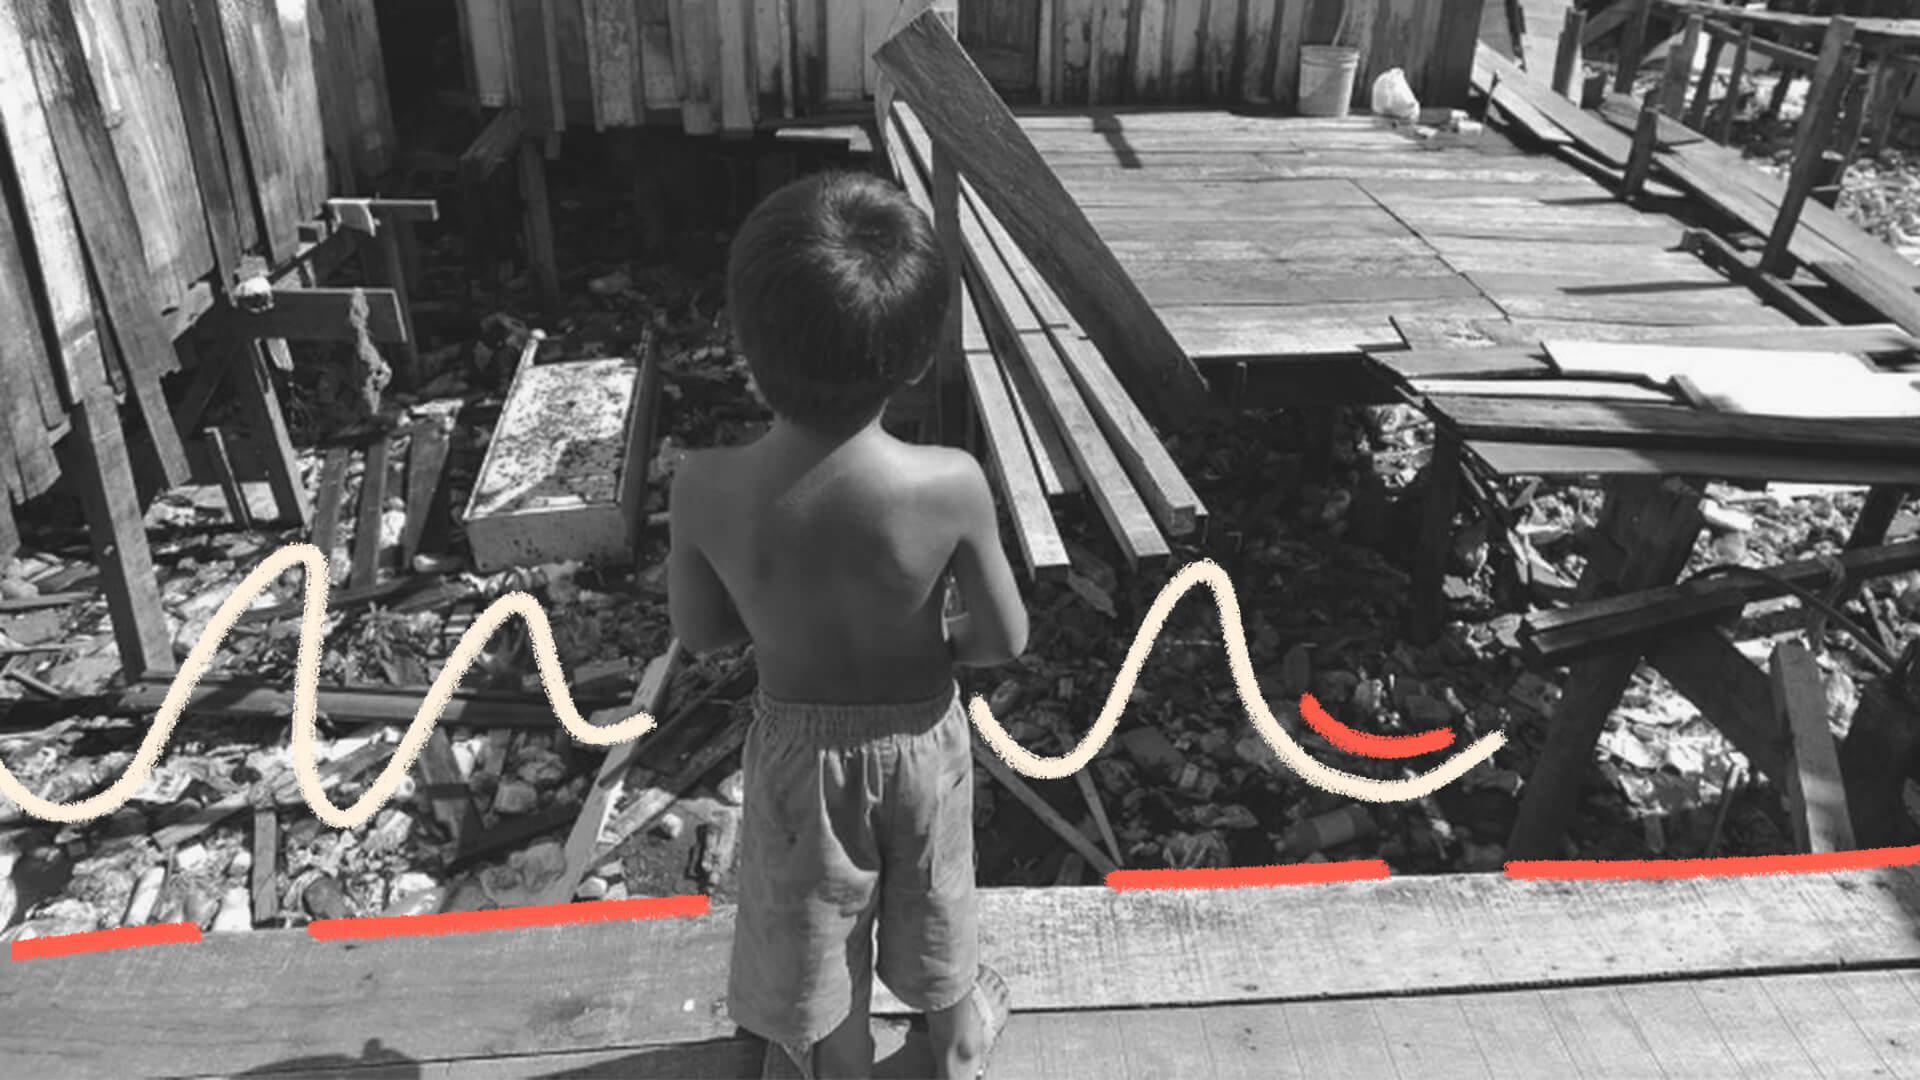 Crianças na pobreza: Imagem em preto e branco de uma criança de costas olhando escombros.